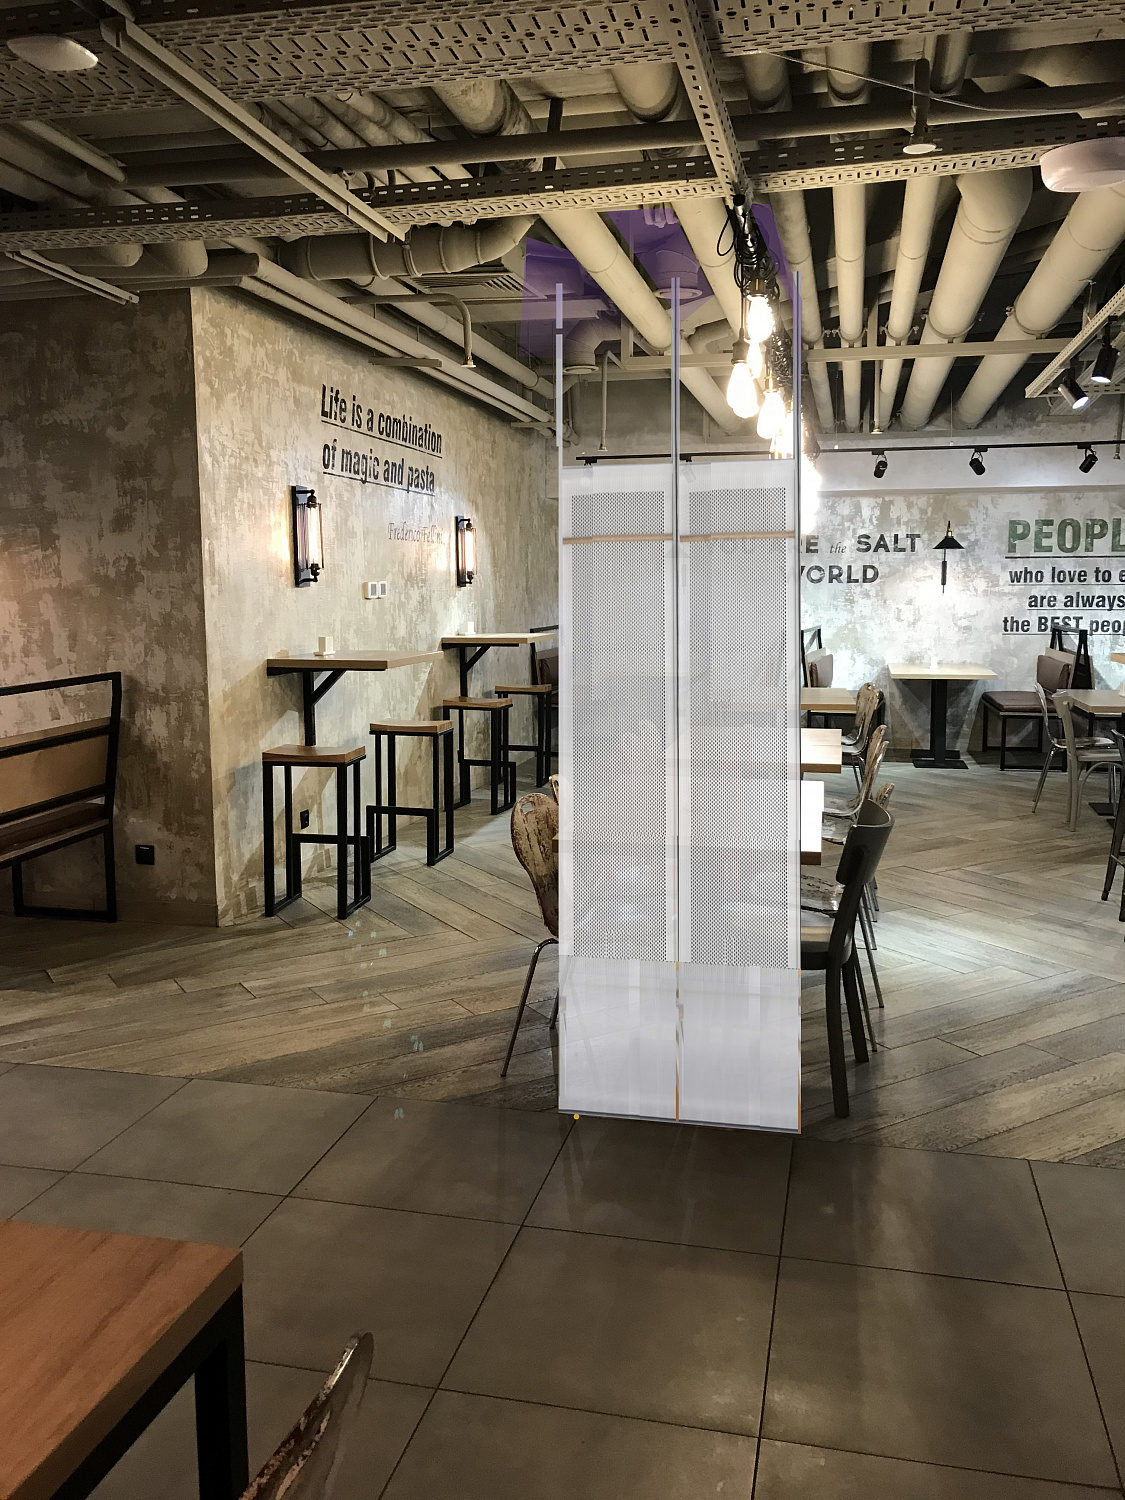 Концепция редизайна кафе в БЦ Павелецкая плаза